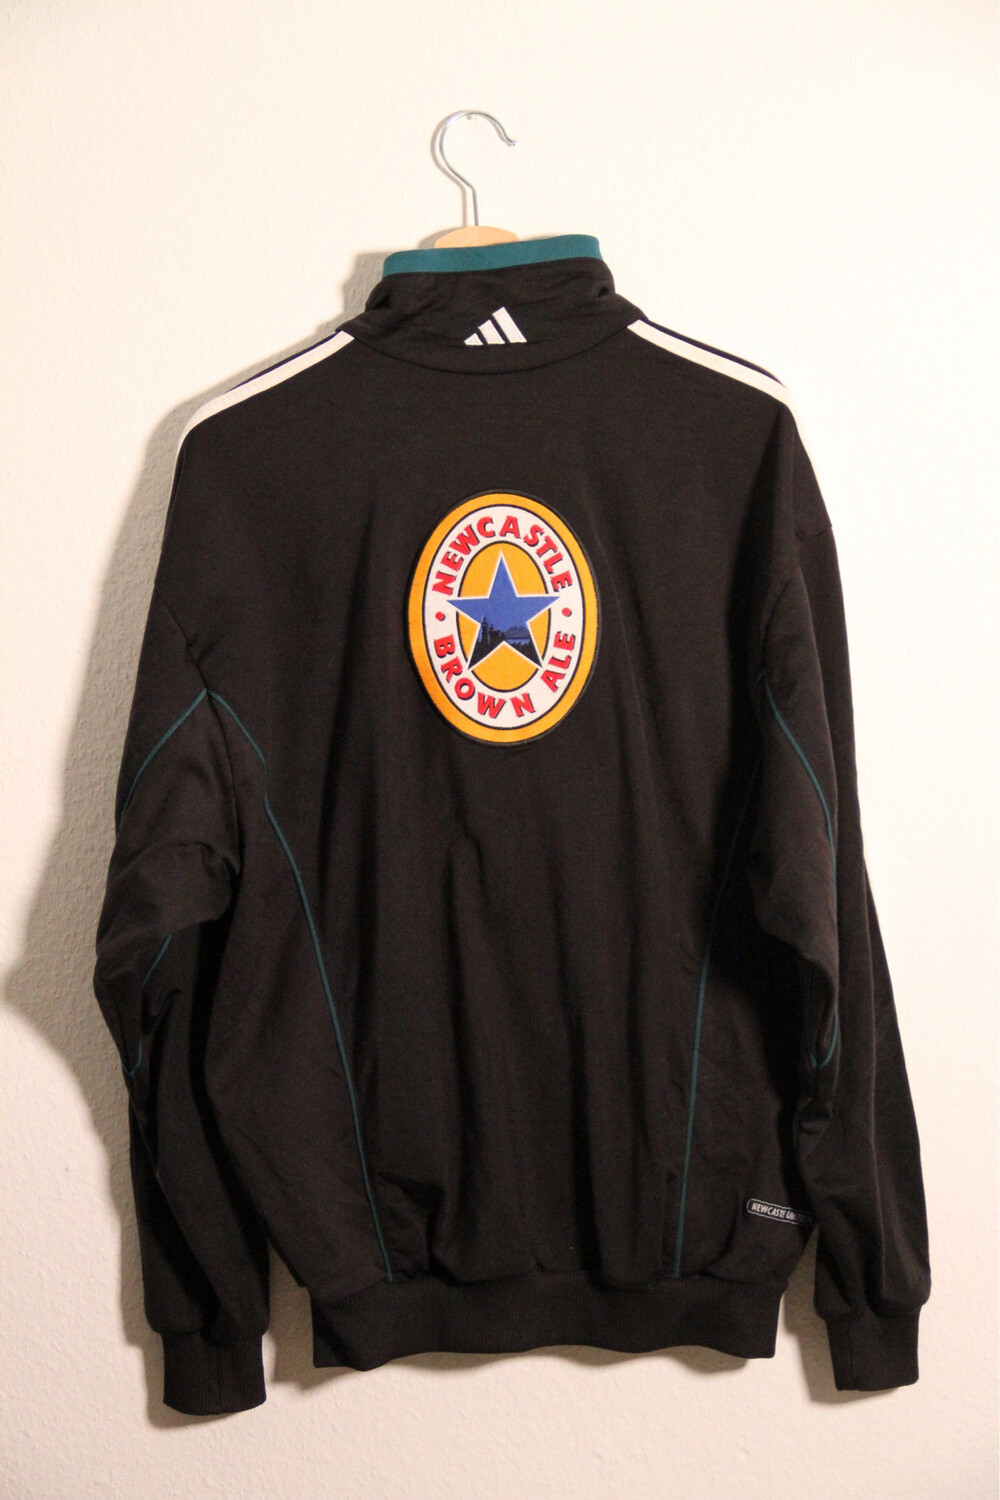 Newcastle United 1999/00 Training Jacket